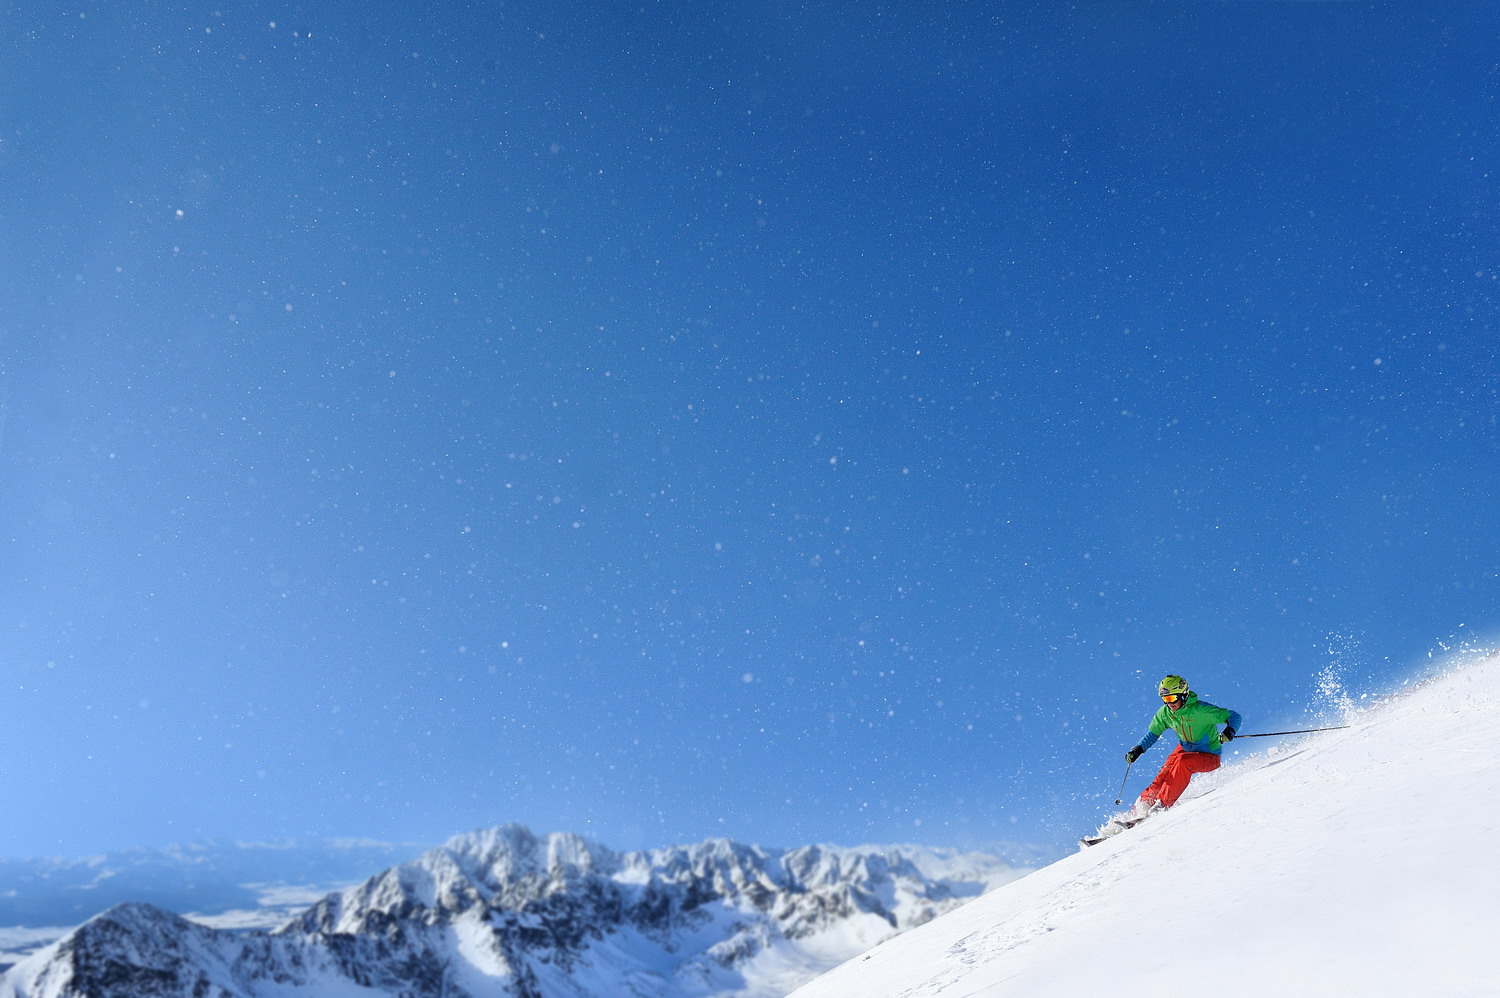 Pošepkajte svojim lyžiam, lyžovačka v Lomnickom sedle štartuje už v sobotu!